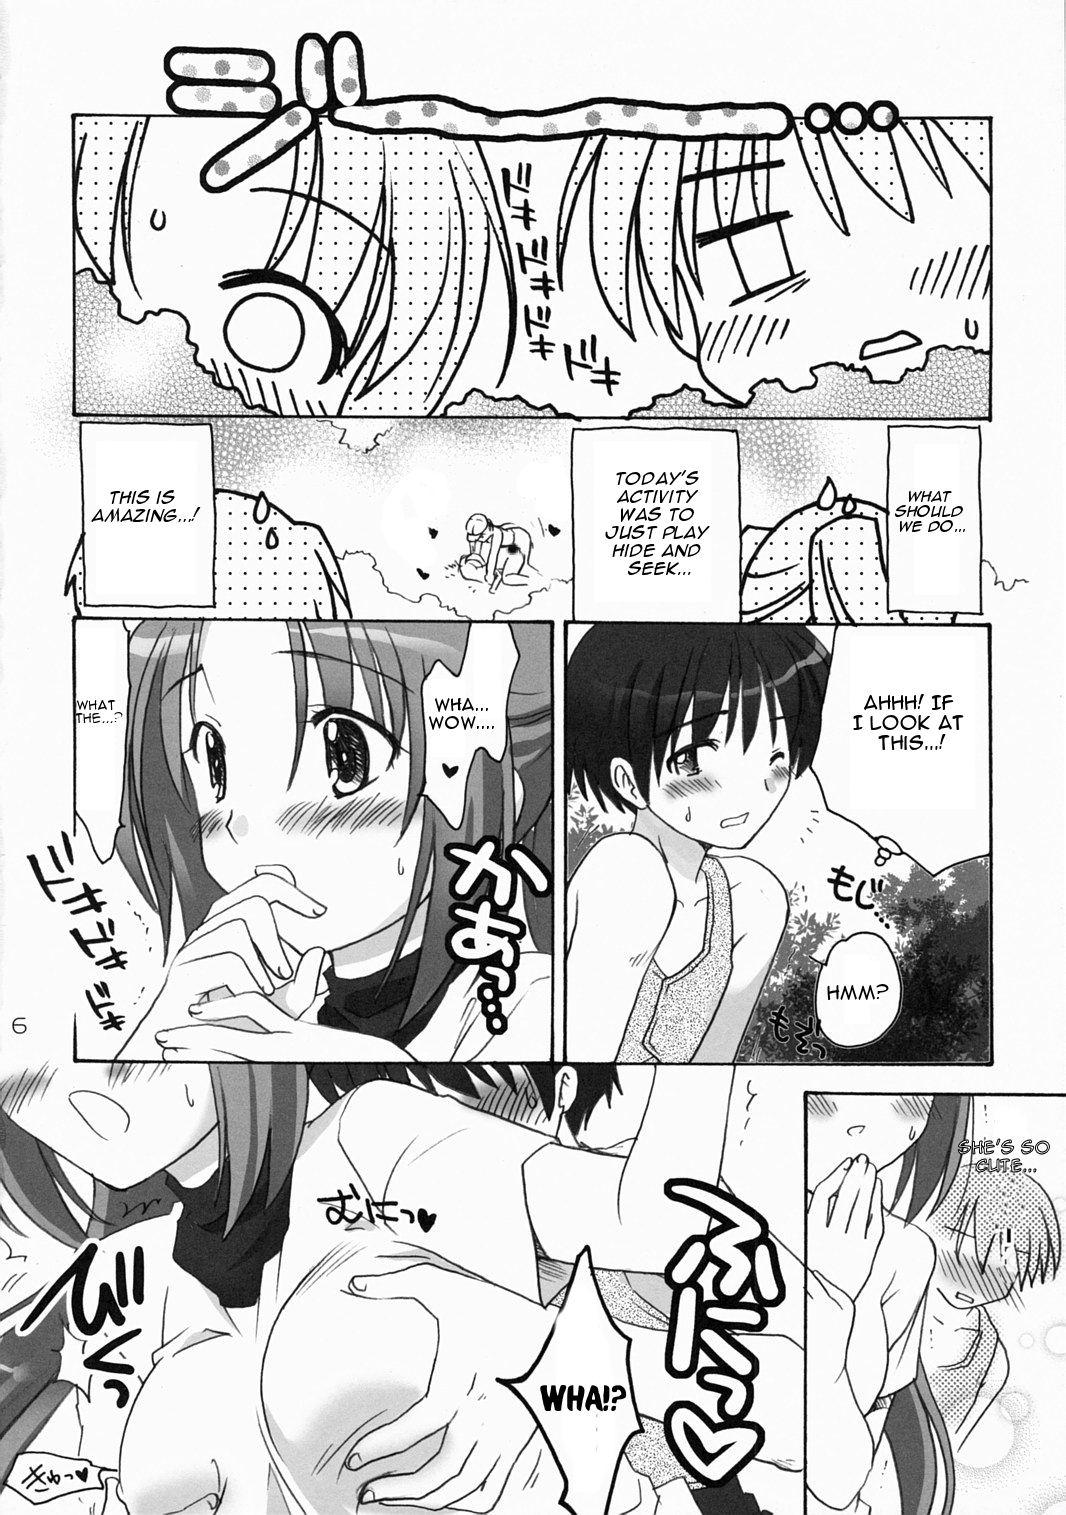 Stepsiblings Higurashi Urabon 2 - Higurashi no naku koro ni Amiga - Page 5